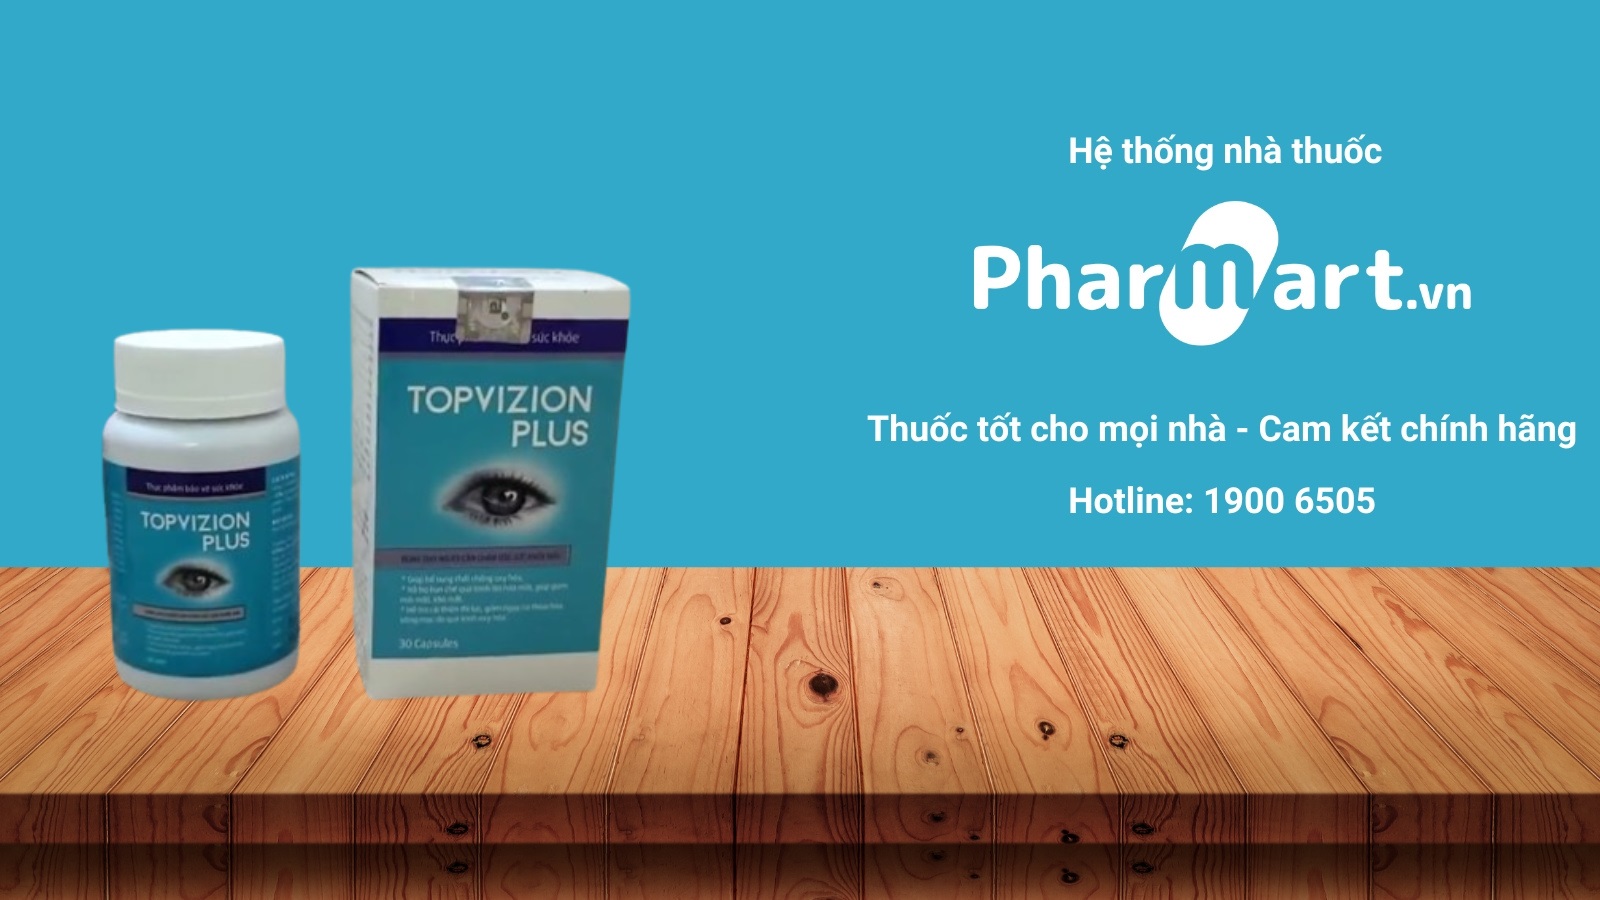 Topvizion Plus là sản phẩm được phân phối chính hãng tại Pharmart.vn 